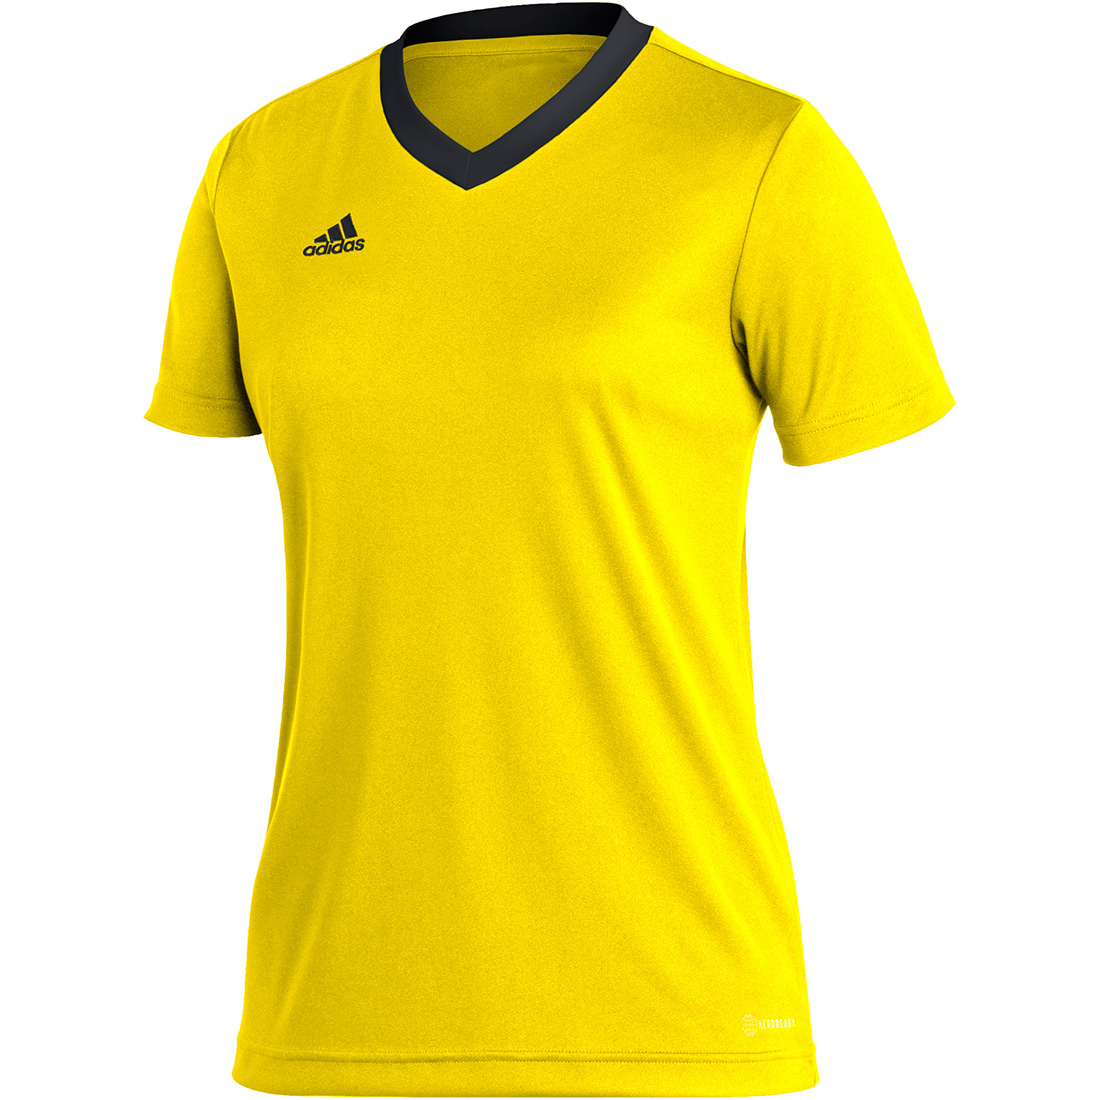 Kinder gelb-schwarz Trikot 22 Entrada online kaufen Adidas